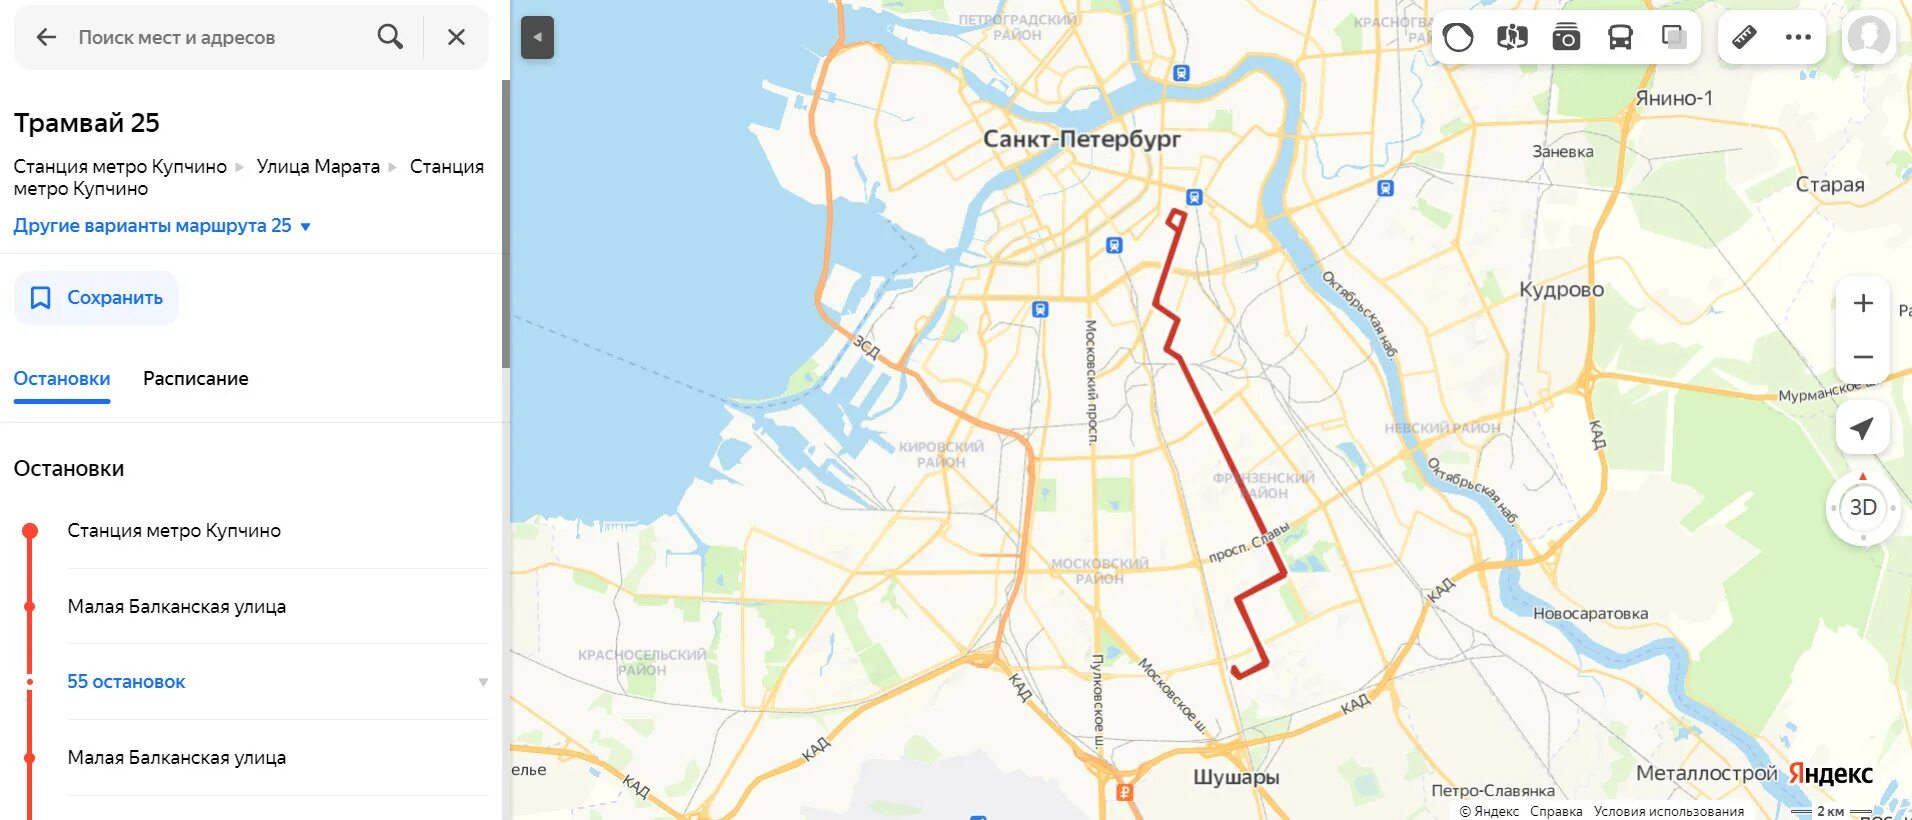 Трамвай 7 СПБ маршрут. Маршруты трамваев СПБ. Маршрут трамвая 7 Санкт-Петербург на карте. Карта трамвайных маршрутов Санкт-Петербурга.